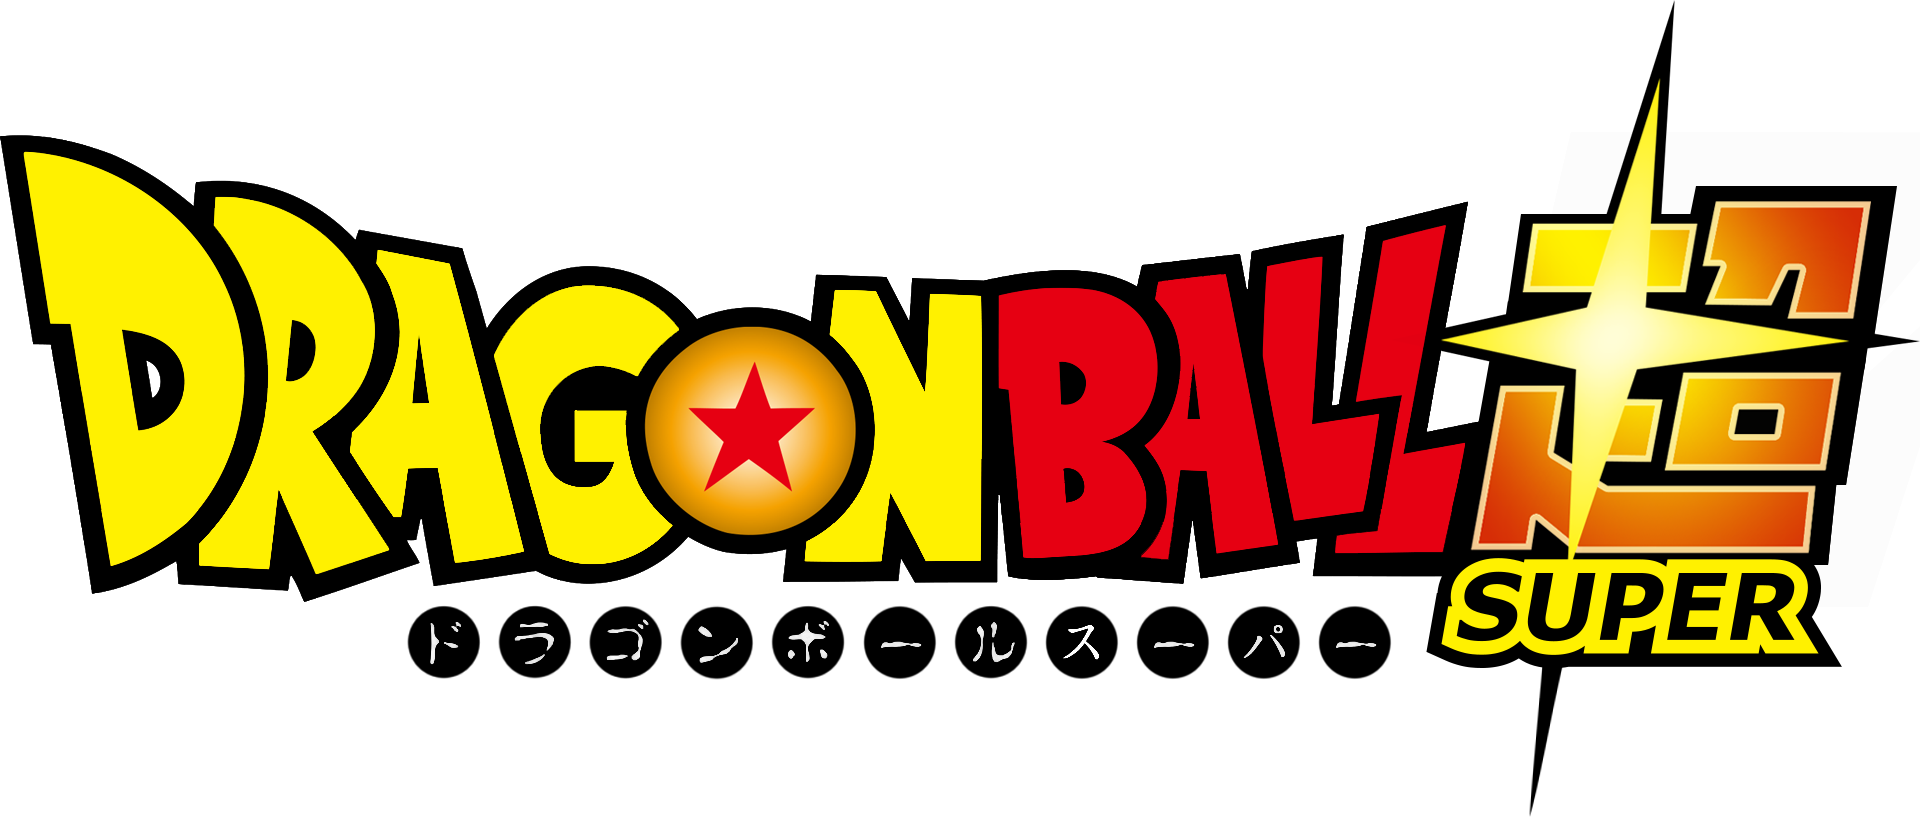 Dragon Ball Super Logo - Dragon Ball Super Letras (1920x817), Png Download